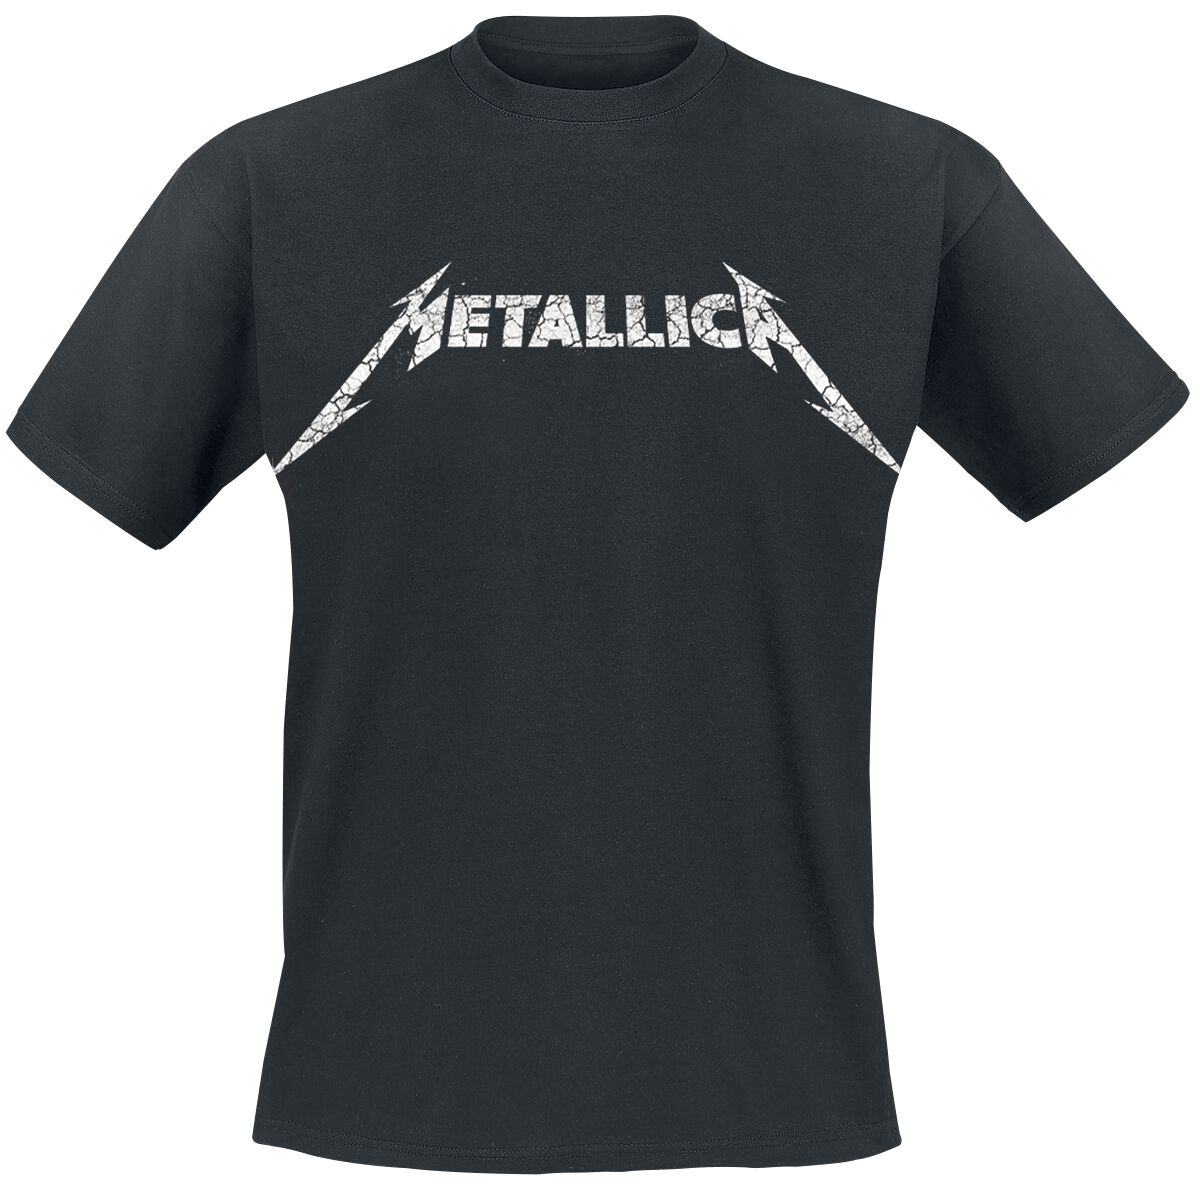 Metallica T-Shirt - Kill Ride Master - S bis 5XL - für Männer - Größe XXL - schwarz  - Lizenziertes Merchandise!